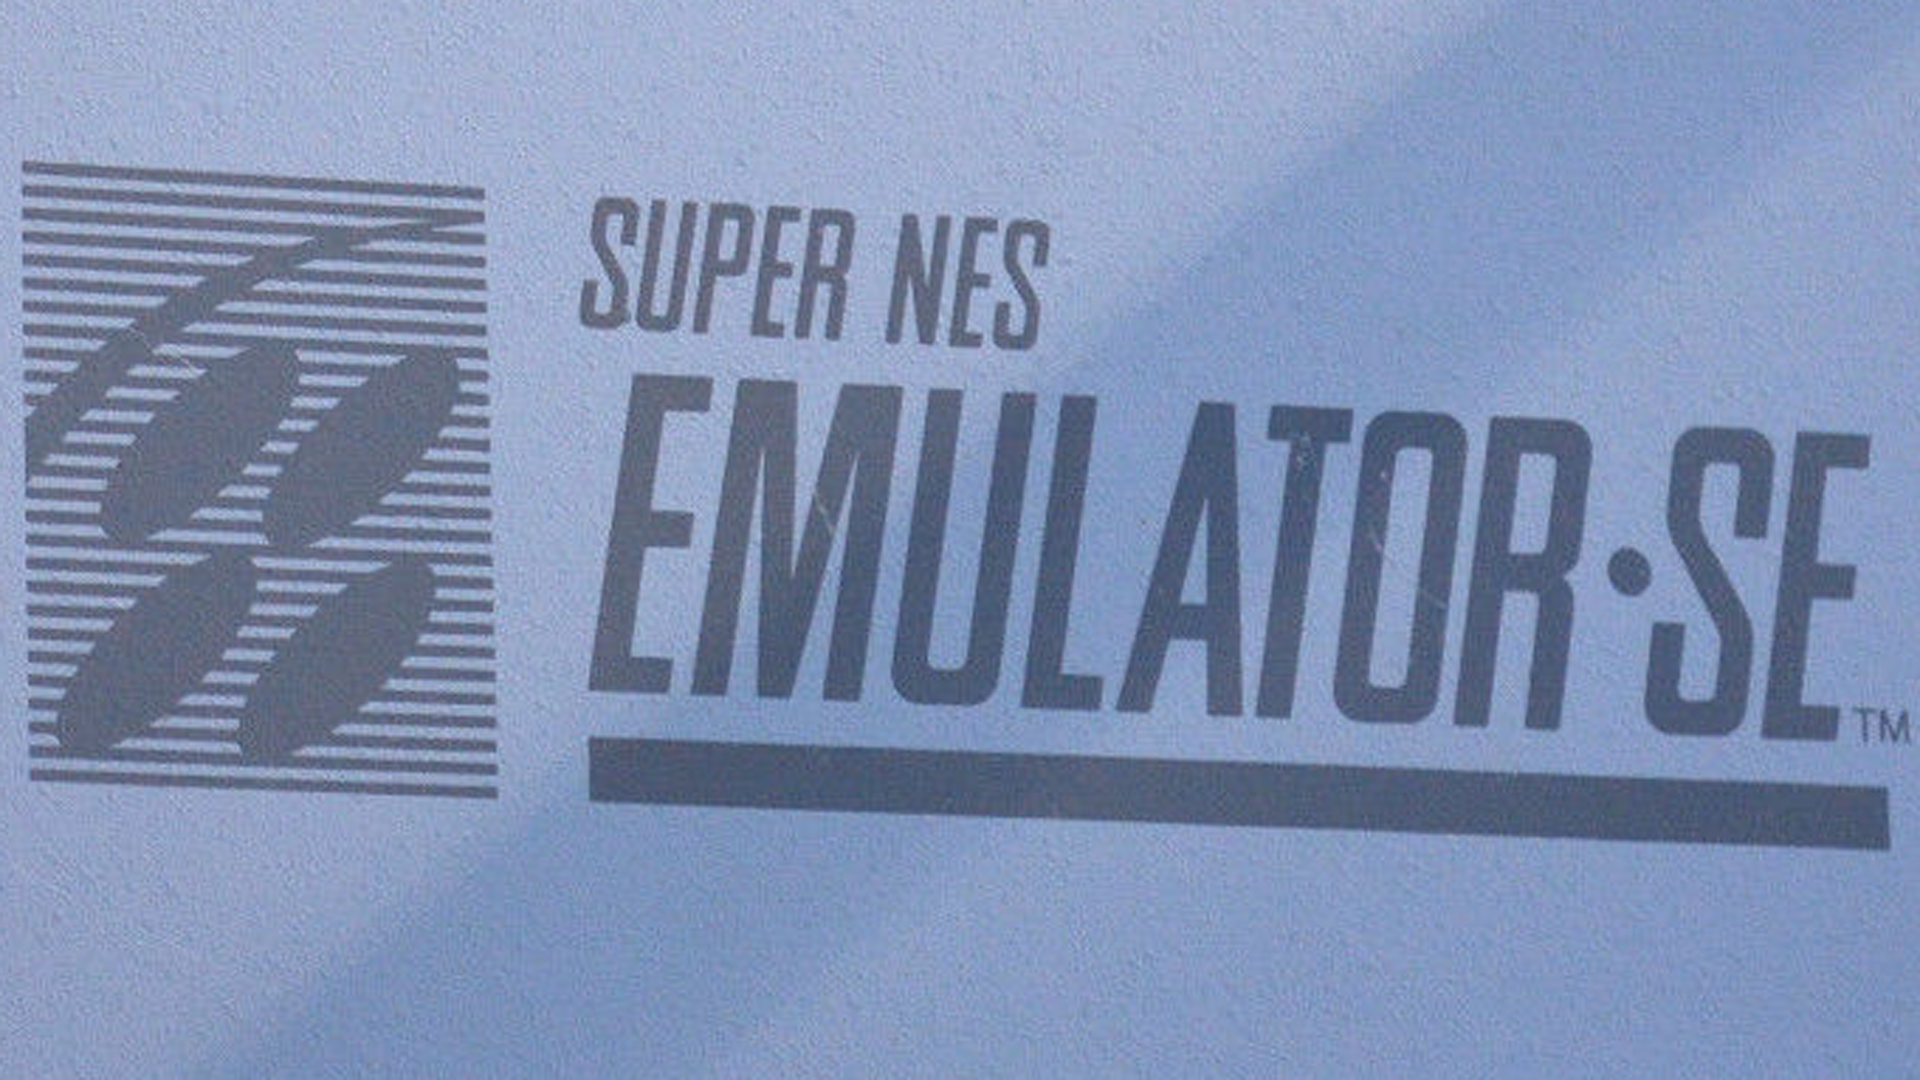 Sale a la venta en eBay un Super NES Emulator SE muy especial